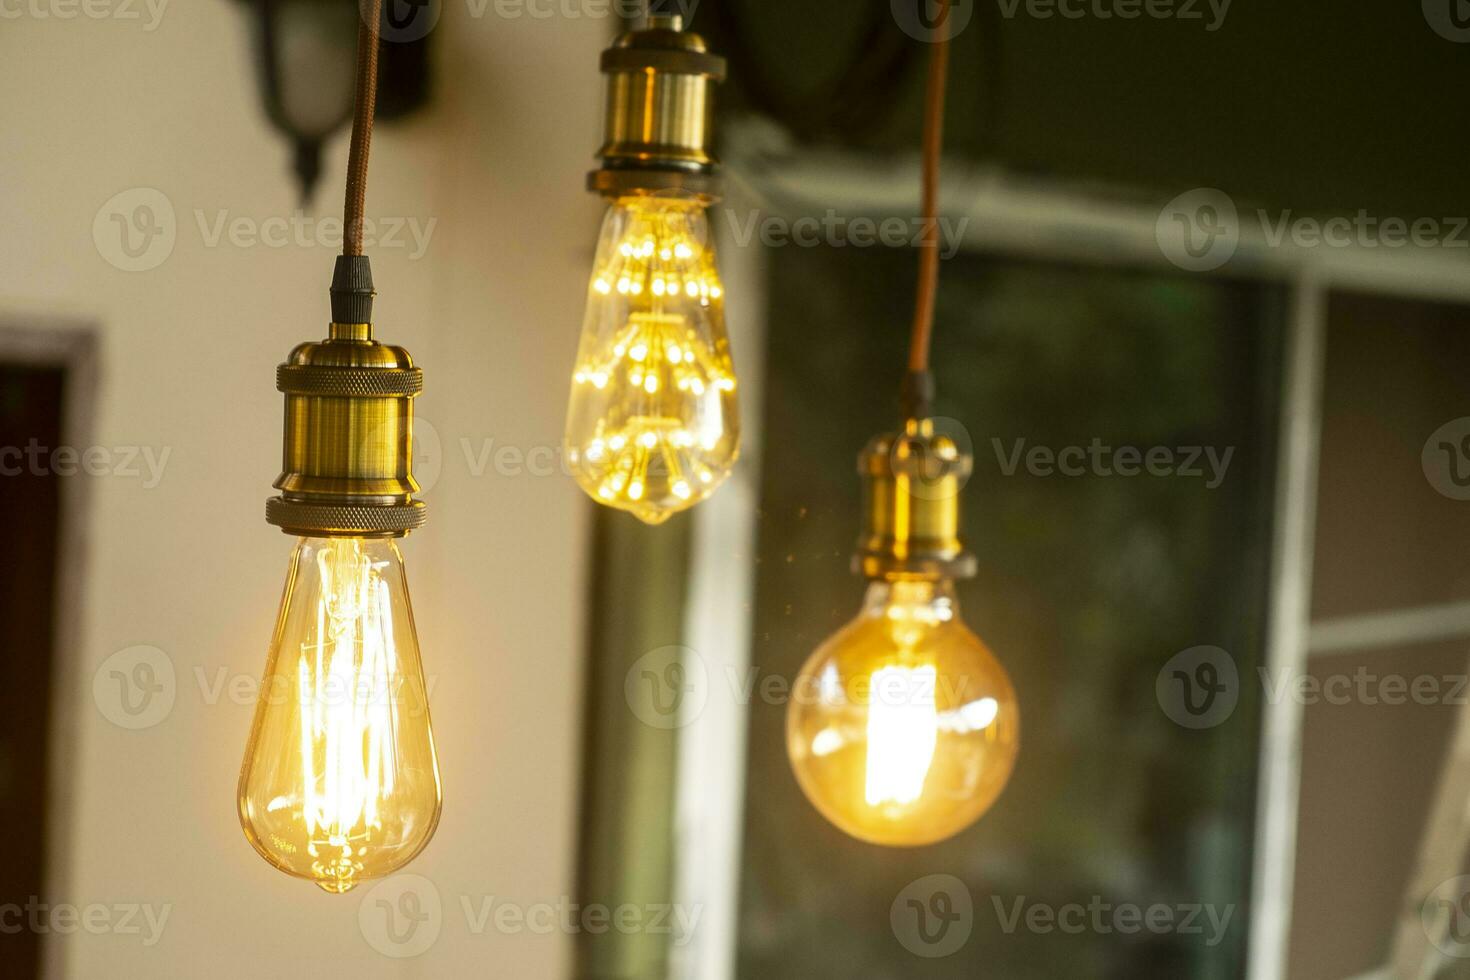 Lámpara eléctrica led incandescente retro clásica sobre fondo borroso foto